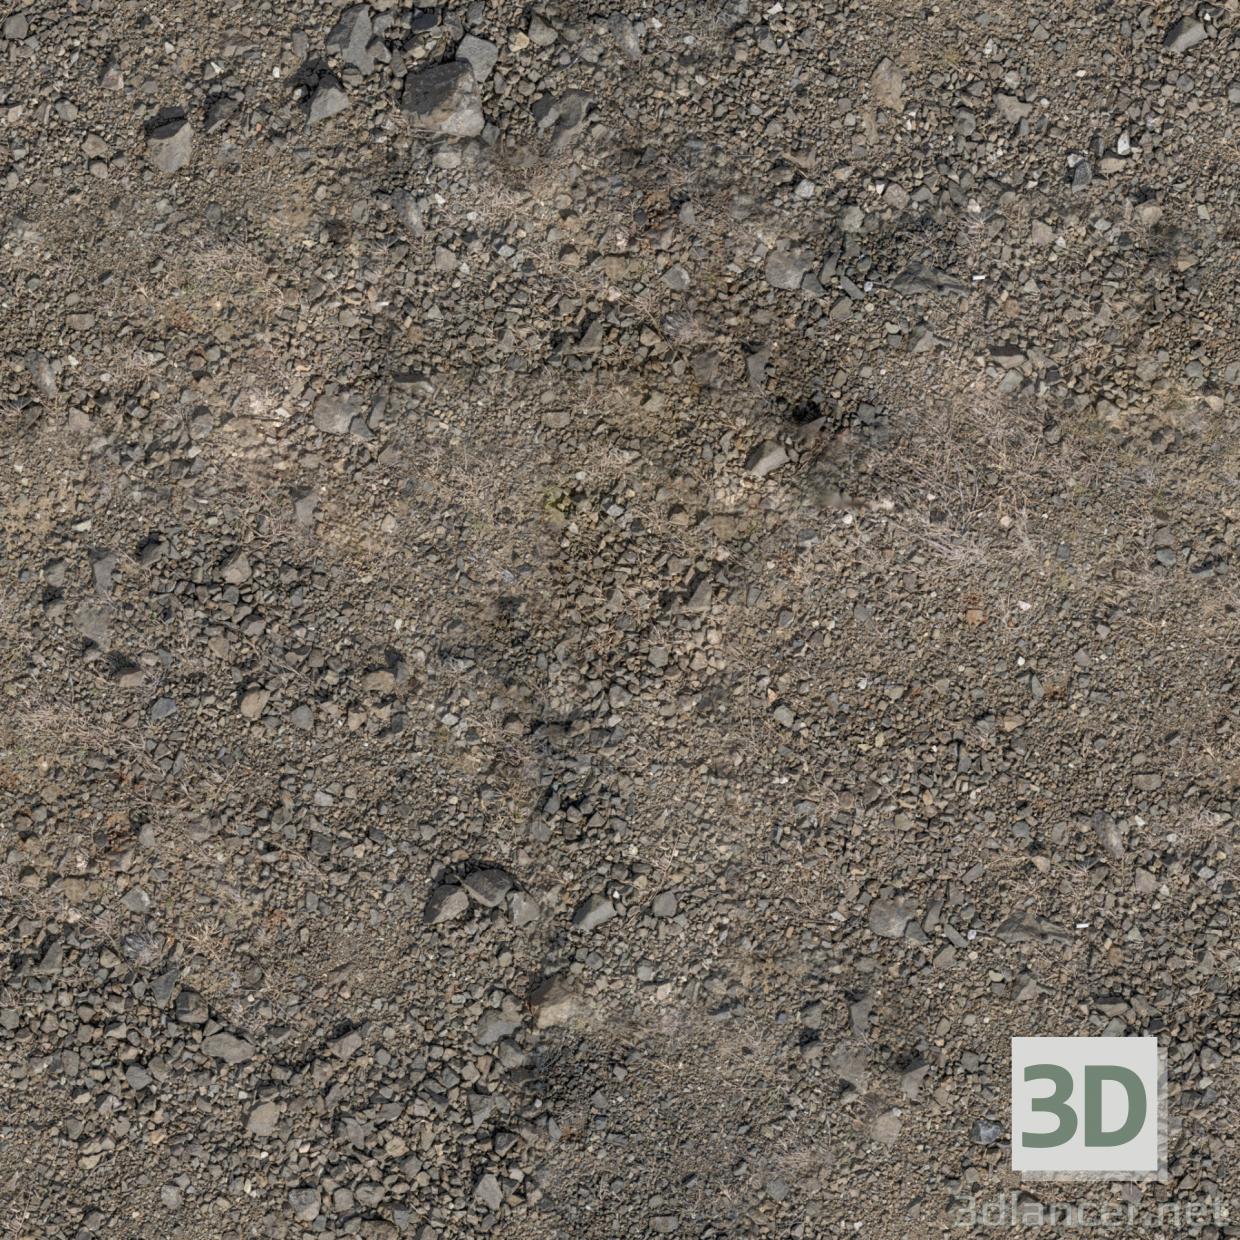 Texture download gratuito di terreno roccioso - immagine